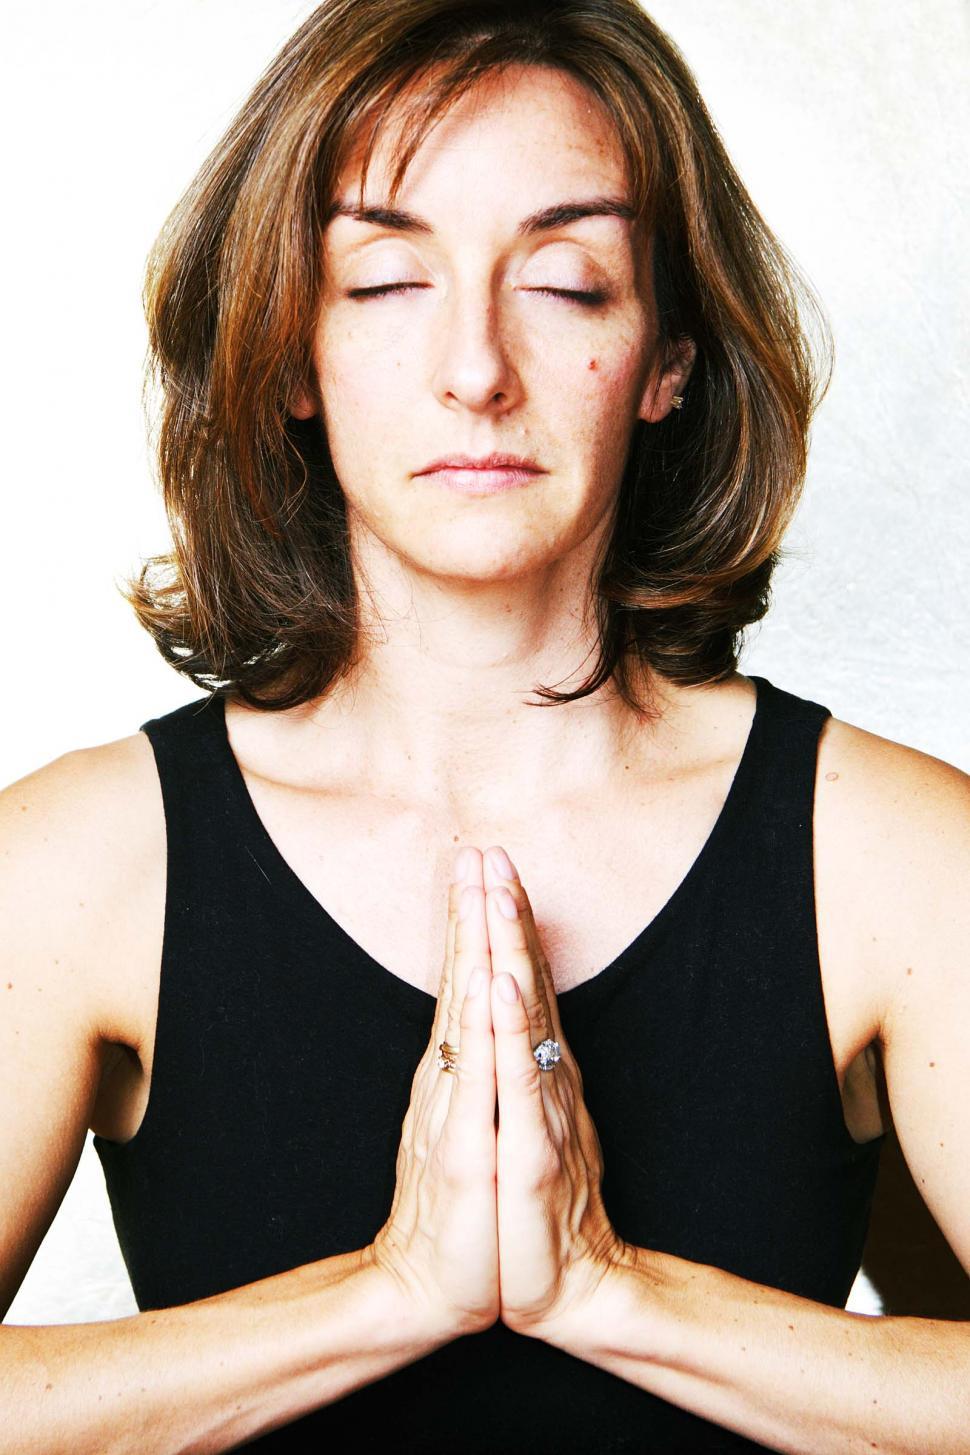 Free Image of Yoga meditation 